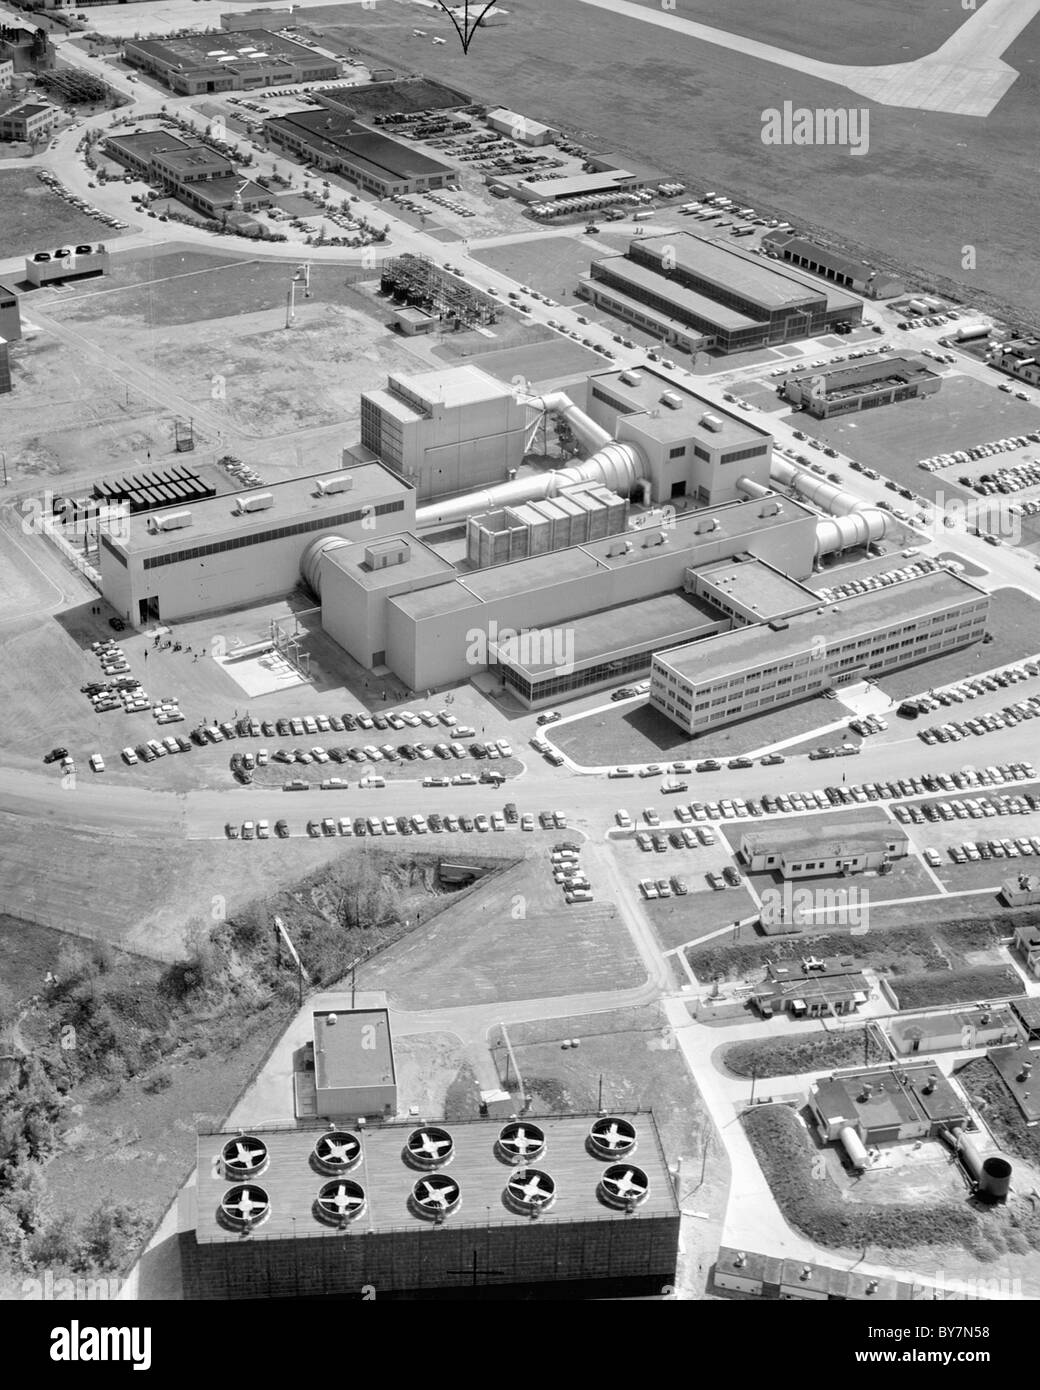 1956 vista aerea mostra il centro di Lewis, ora noto come John H. Glenn Research Center al campo di Lewis. Cleveland, Ohio. Foto Stock